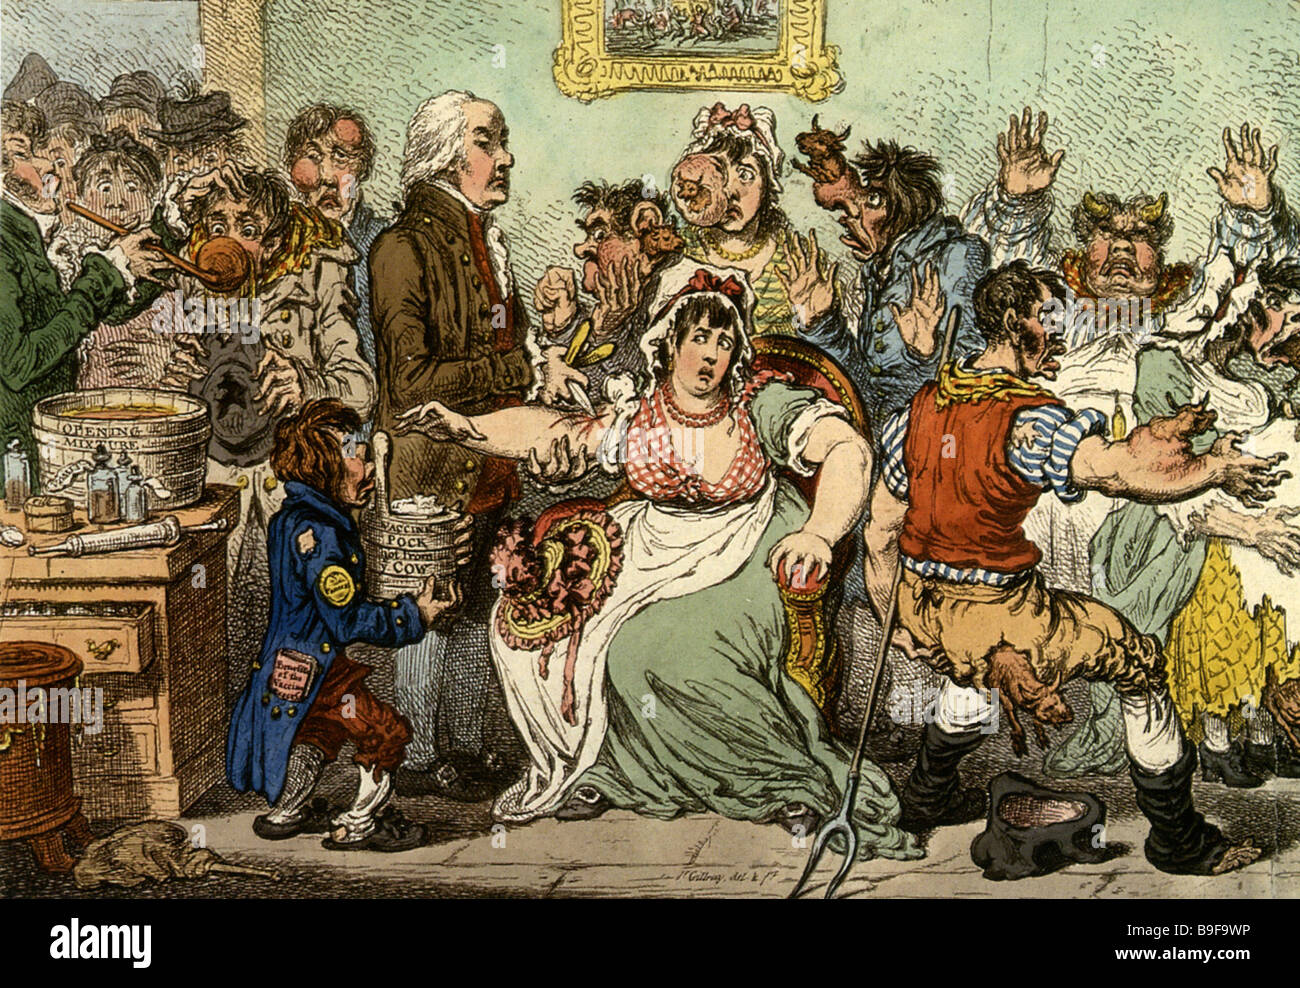 Il vaiolo - Edward Jenner facendo le vaccinazioni - vedere la descrizione riportata di seguito Foto Stock